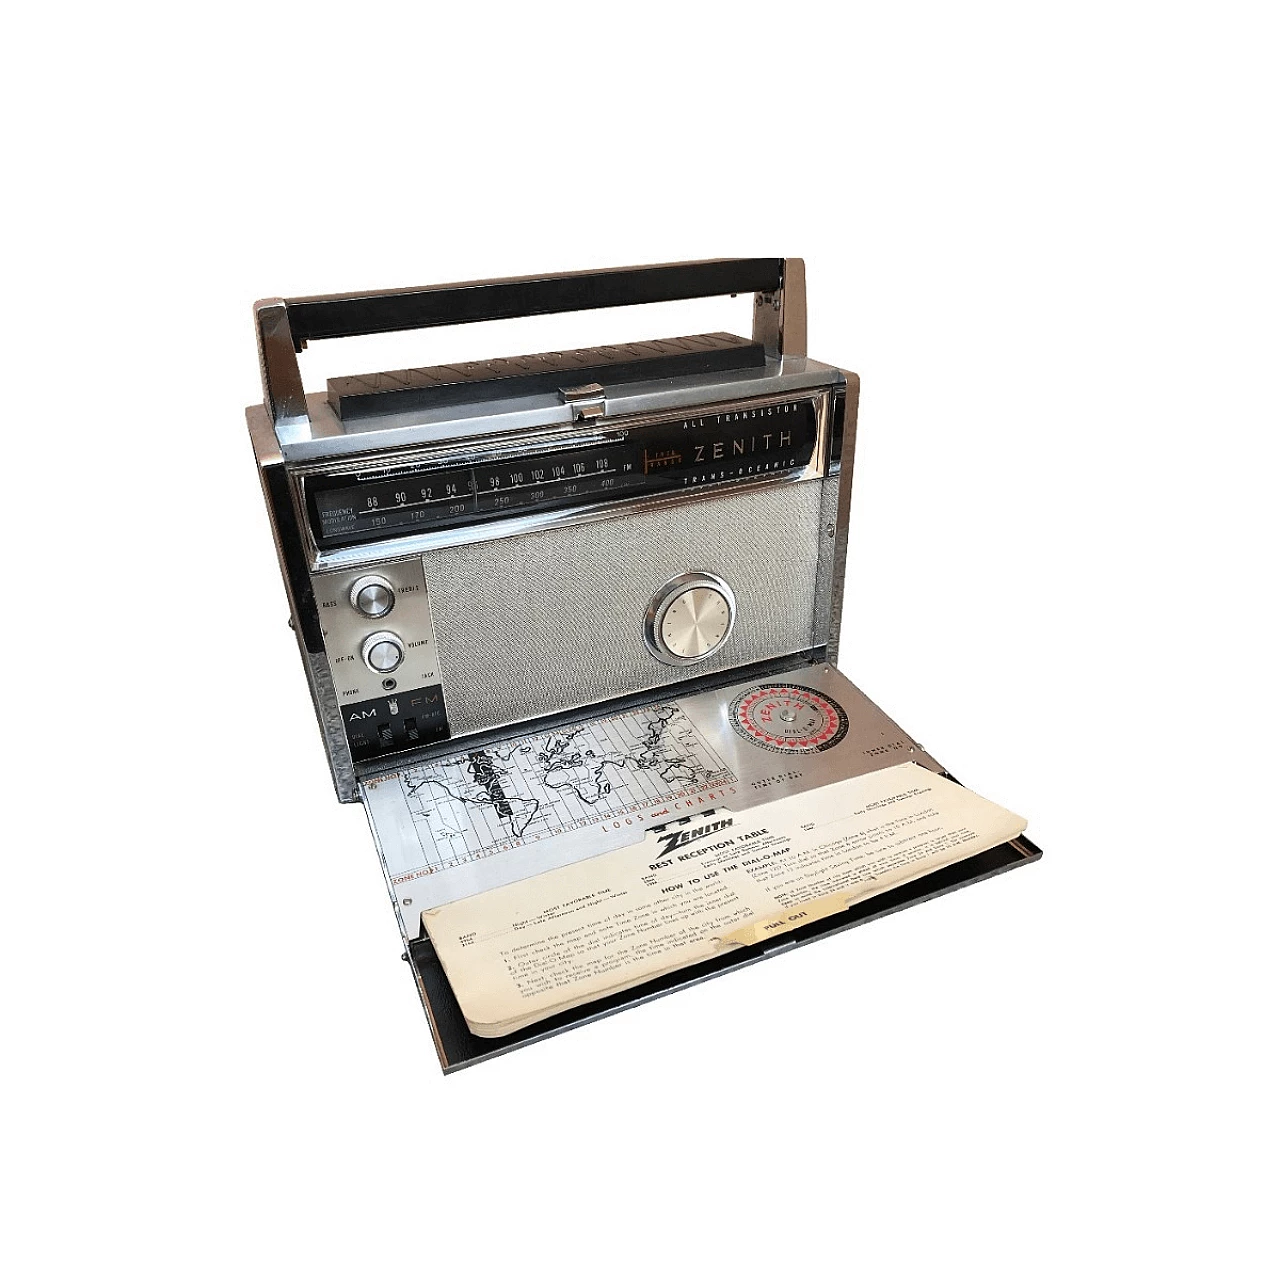 Trasmettitore radio ad onde Zenith di origine americana, anni '40 1061016